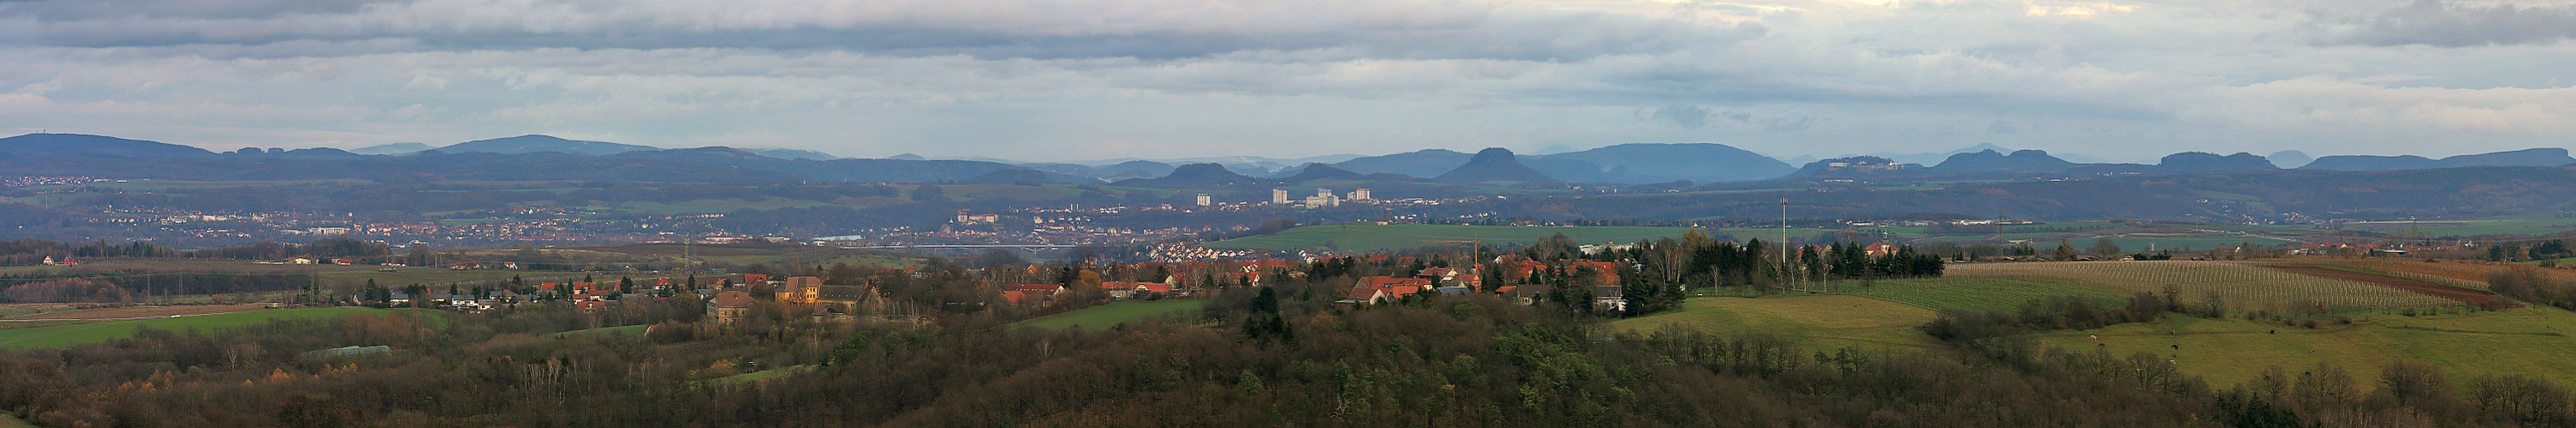 Endlich in unserer Umgebung einen fast unverstellten Blick auf die Sächsische Schweiz gefunden...